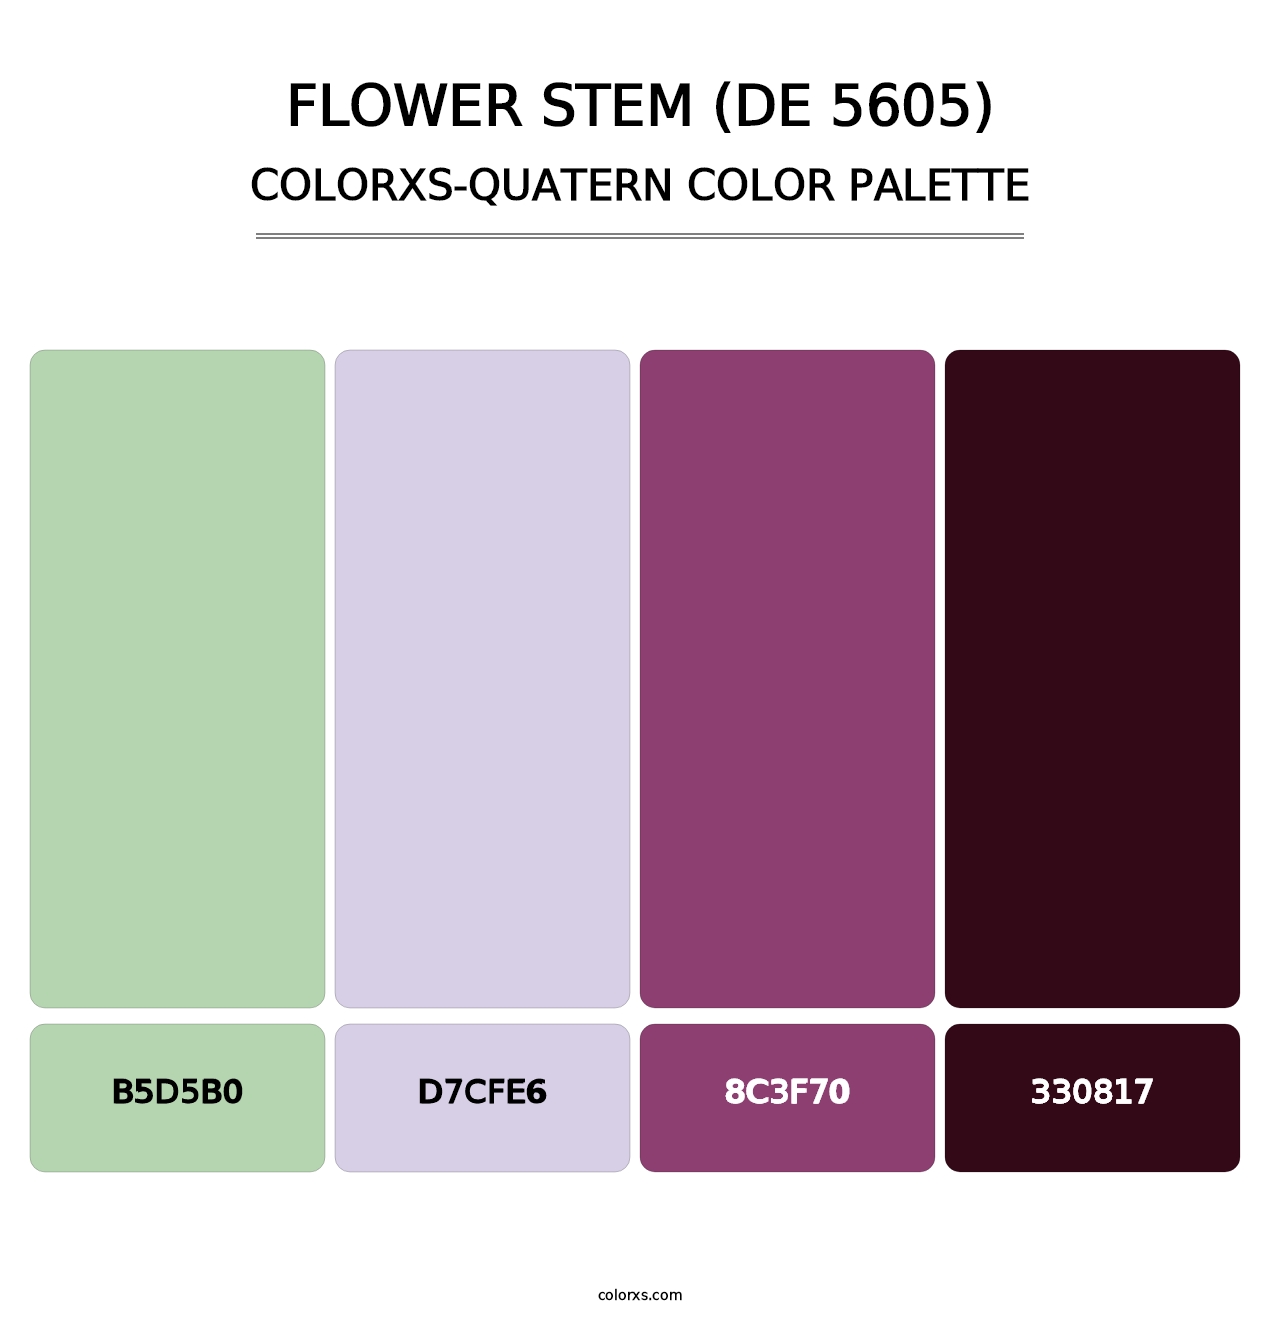 Flower Stem (DE 5605) - Colorxs Quatern Palette